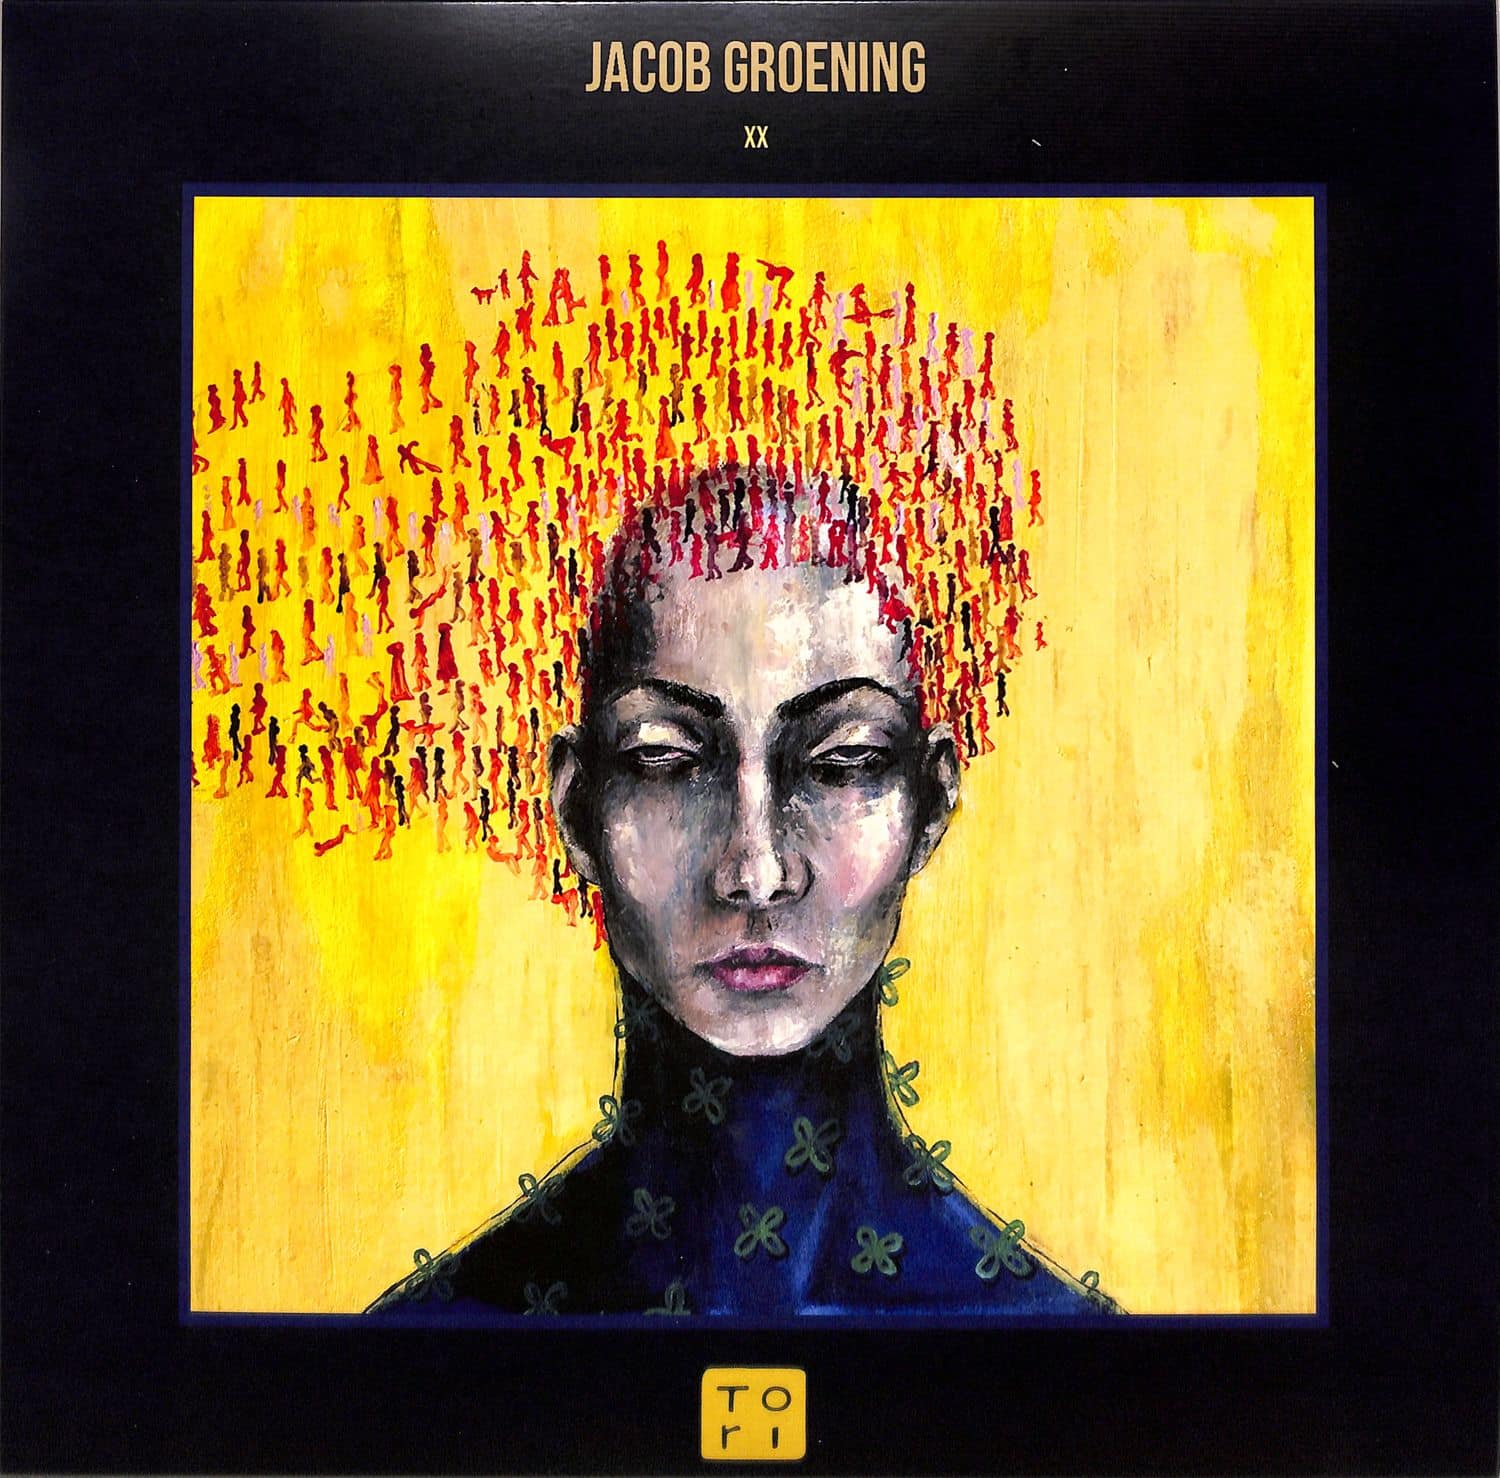 Jacob Groening - XX EP 